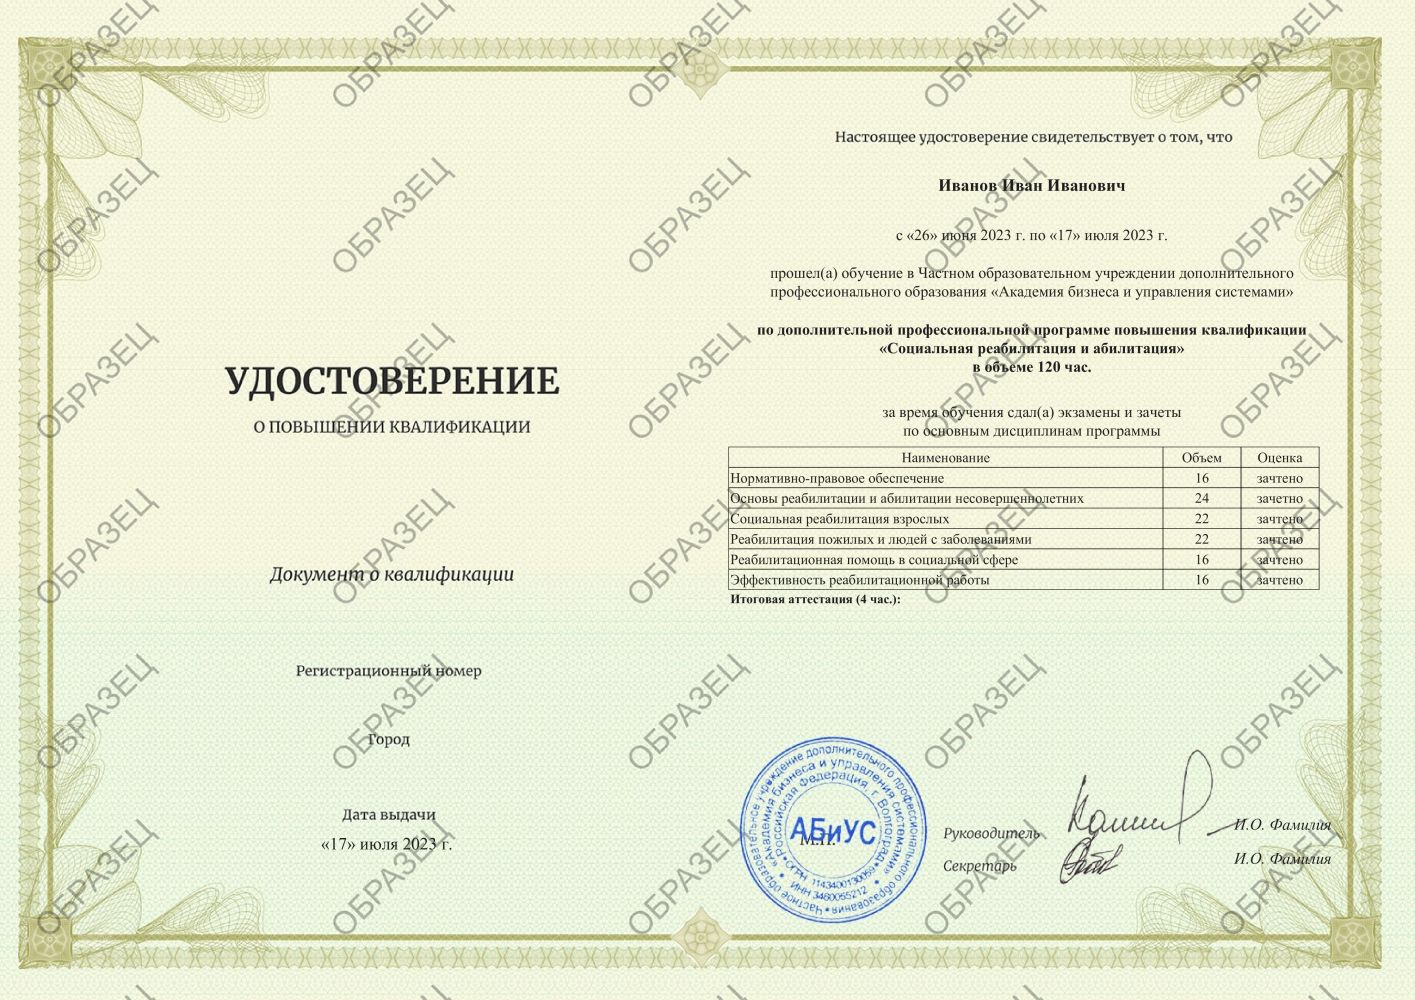 Удостоверение Социальная реабилитация и абилитация 120 часов 6313 руб.